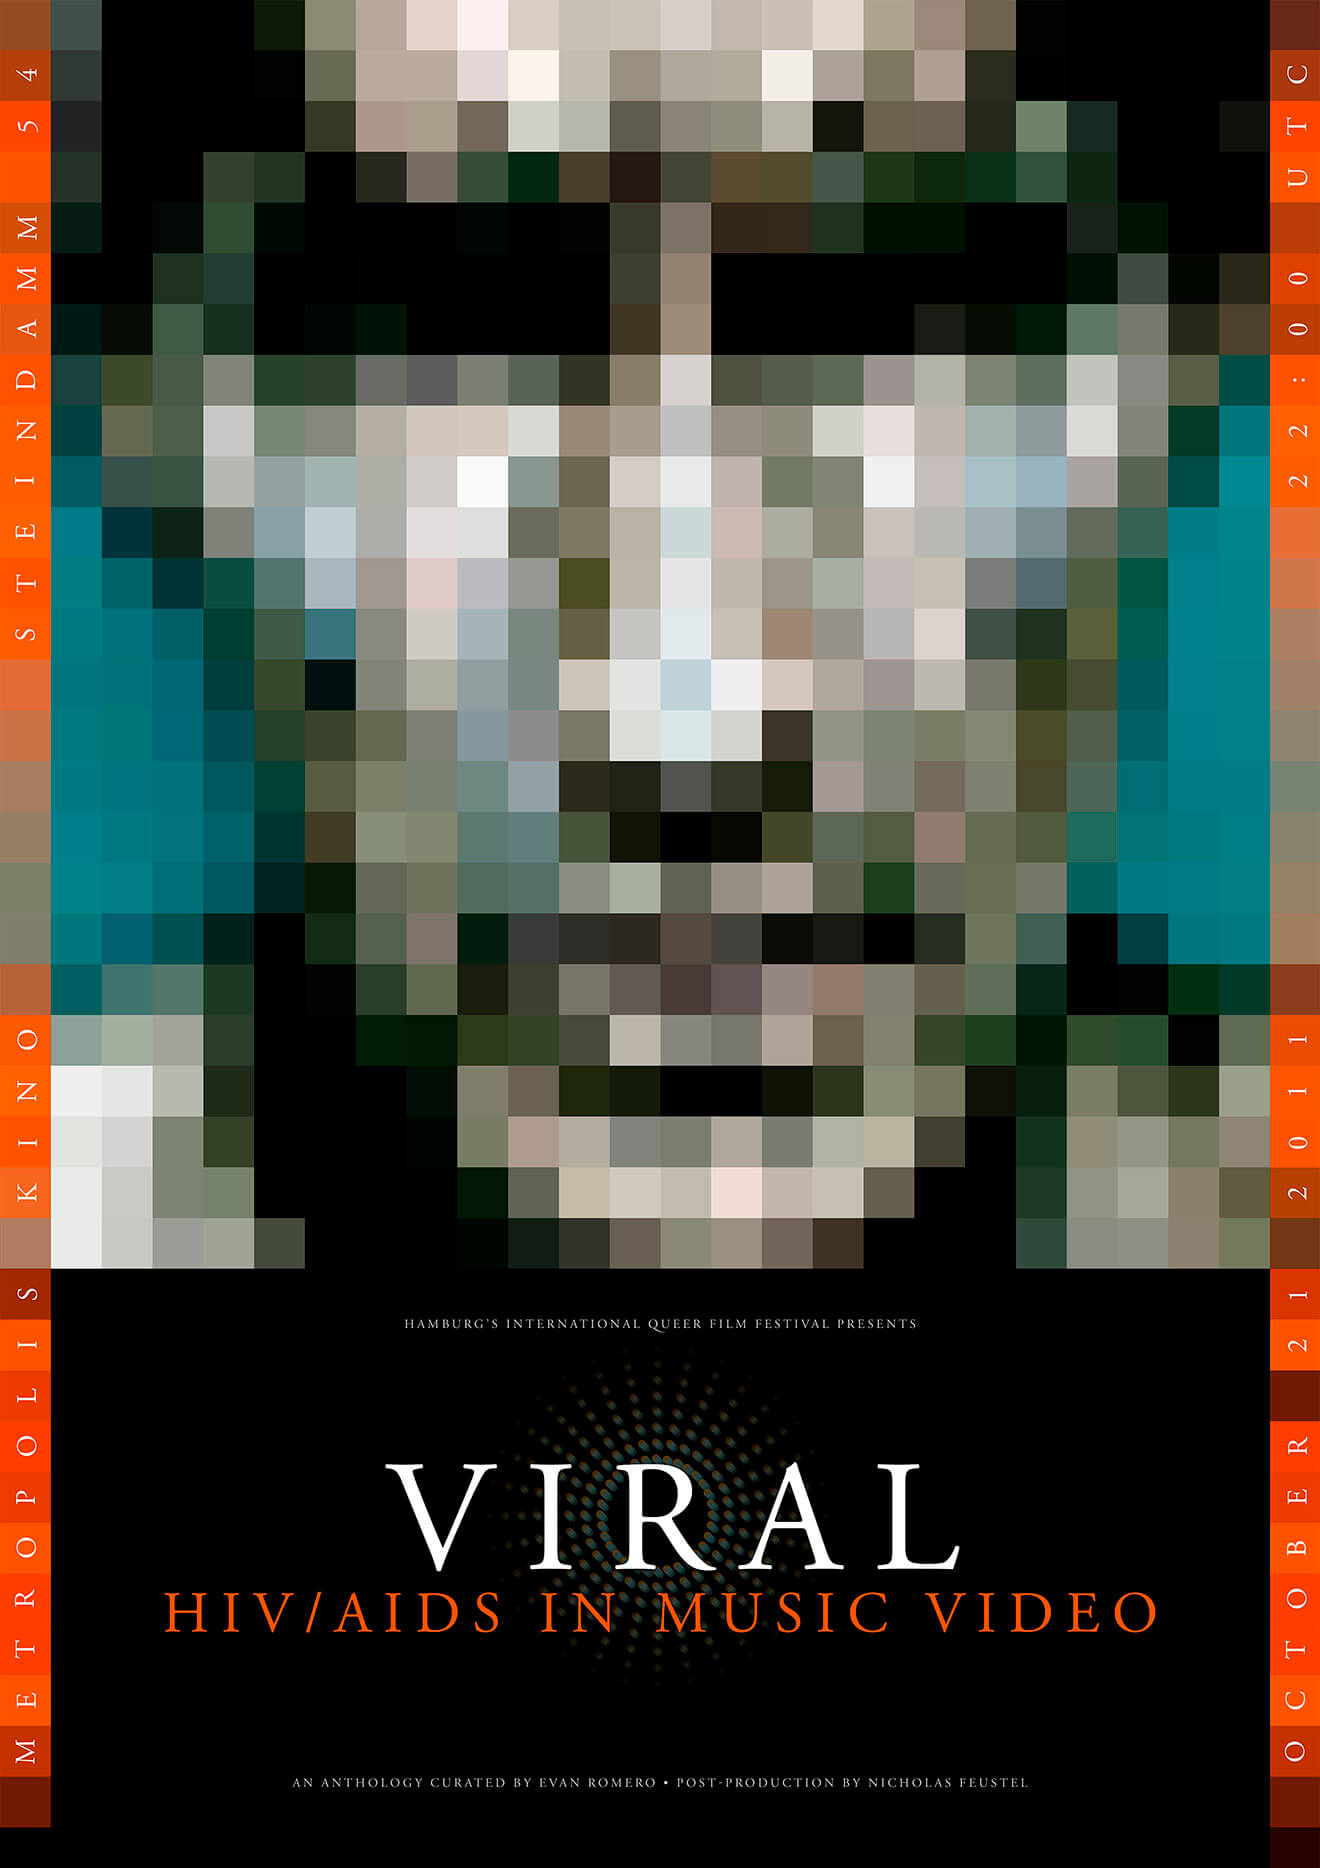 Afiche promocional de la antología de videos “Viral”